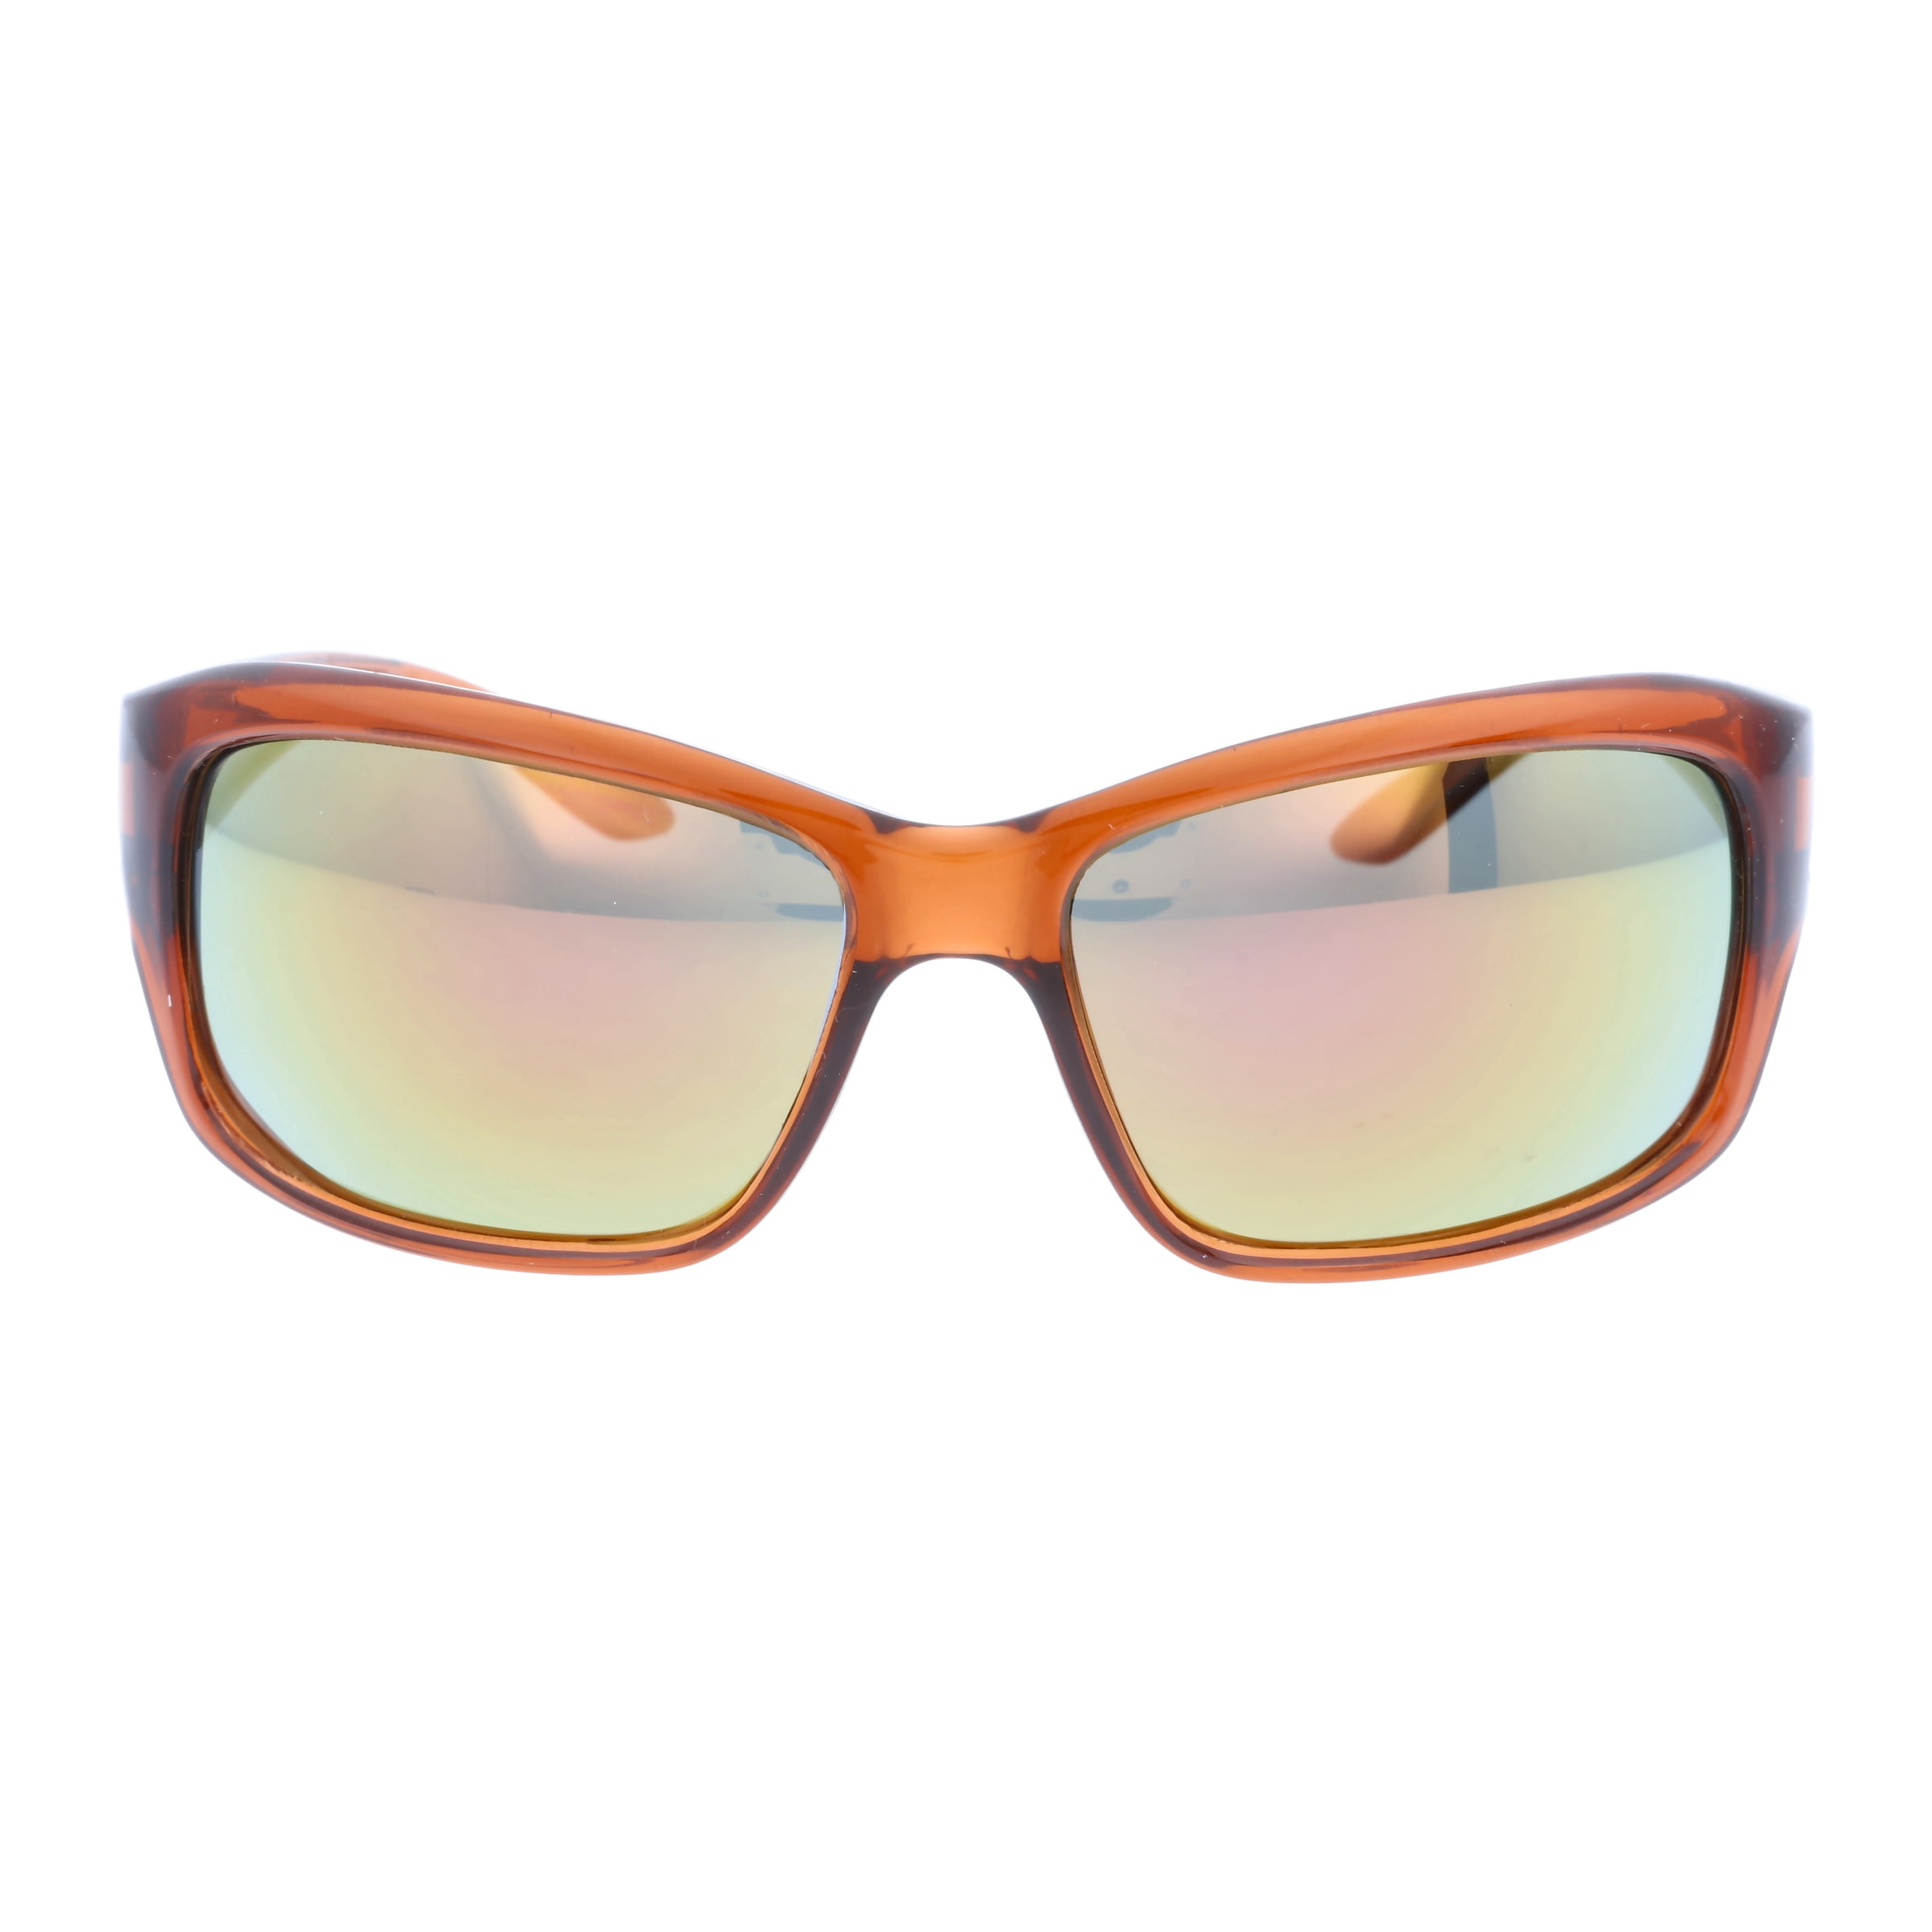 Angler Sunglasses Polarized Brown Cat-3 UV400 Lenses 